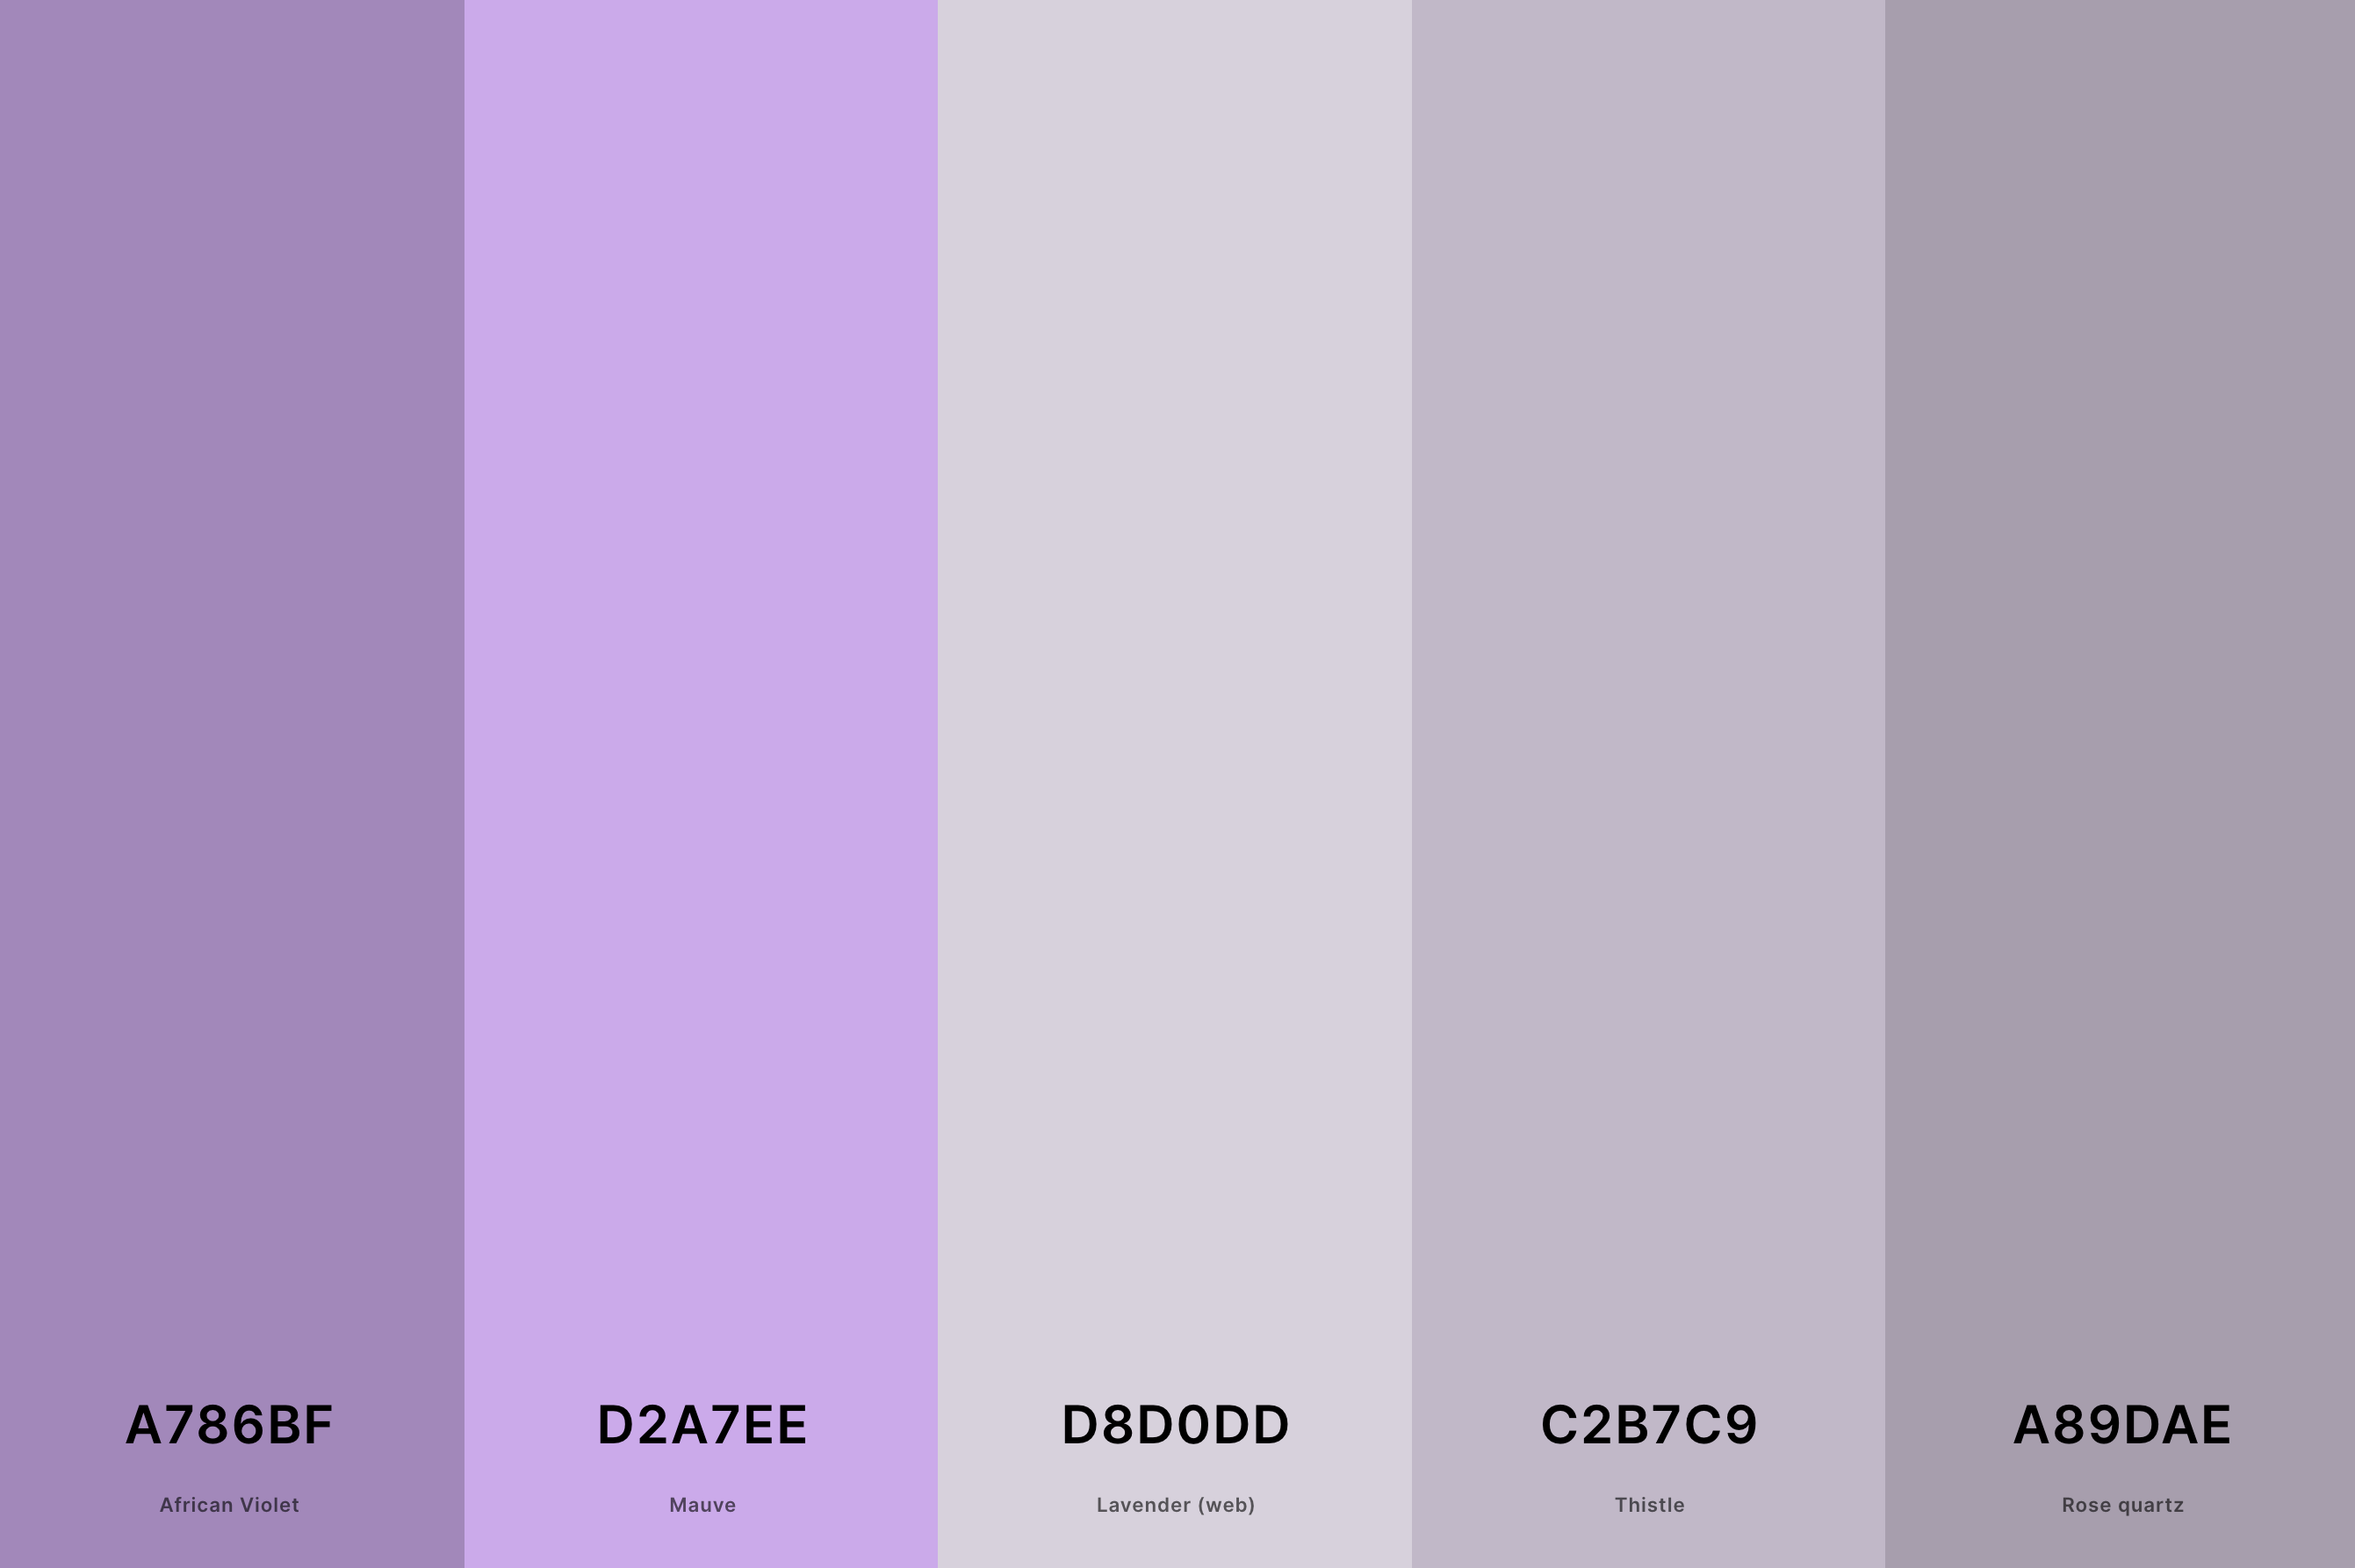 16. Mauve And Grey Color Palette Color Palette with African Violet (Hex #A786BF) + Mauve (Hex #D2A7EE) + Lavender (Web) (Hex #D8D0DD) + Thistle (Hex #C2B7C9) + Rose Quartz (Hex #A89DAE) Color Palette with Hex Codes